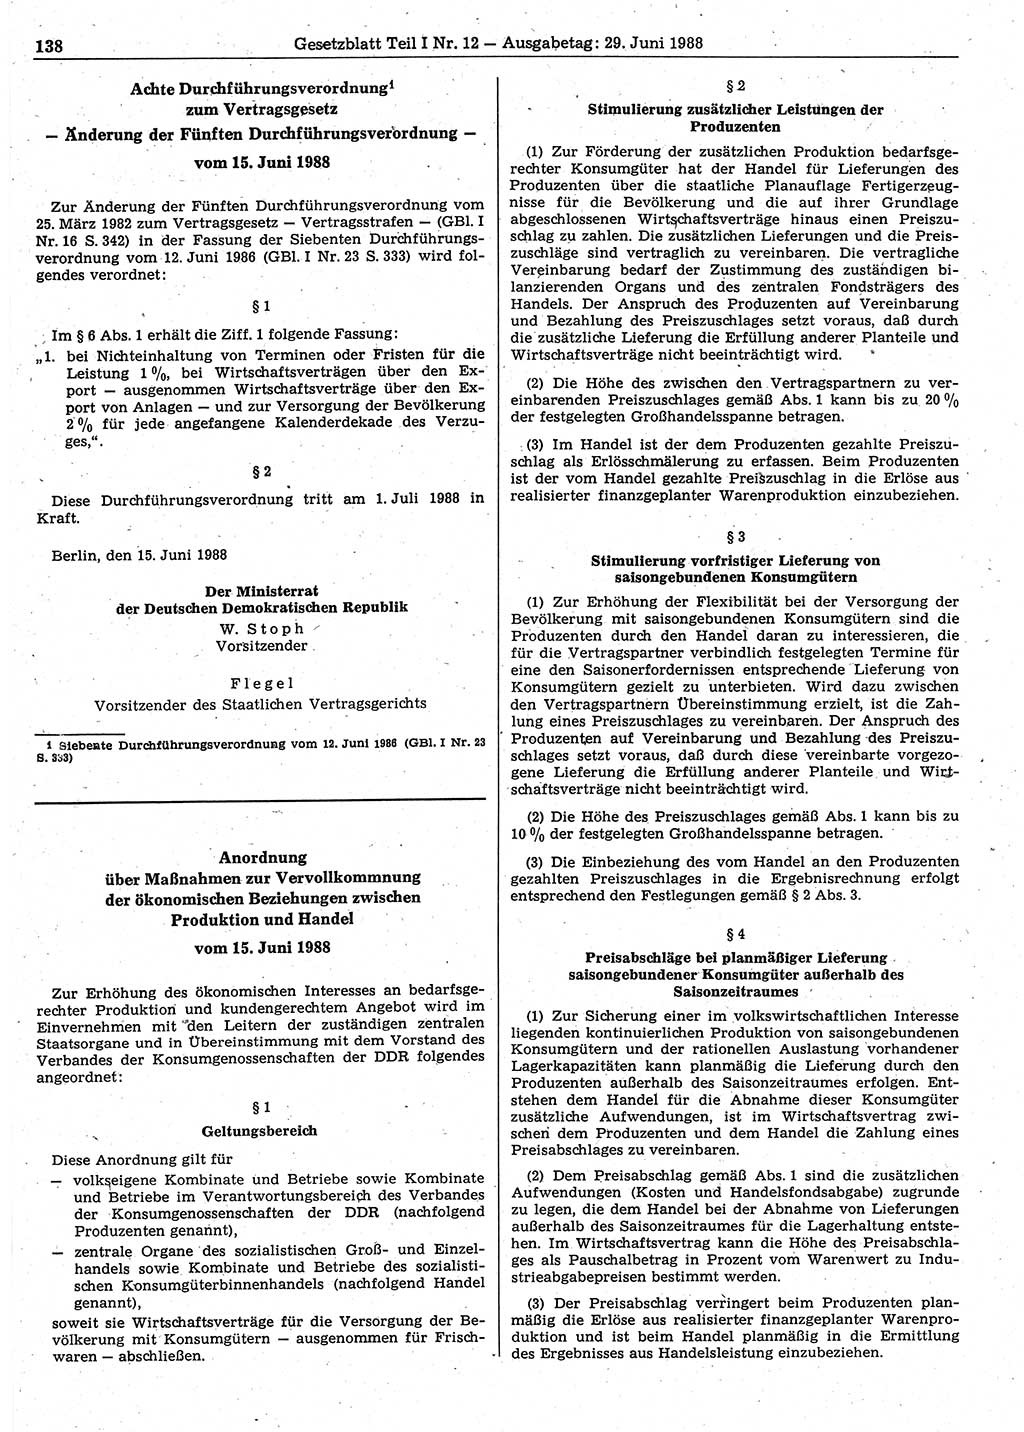 Gesetzblatt (GBl.) der Deutschen Demokratischen Republik (DDR) Teil Ⅰ 1988, Seite 138 (GBl. DDR Ⅰ 1988, S. 138)